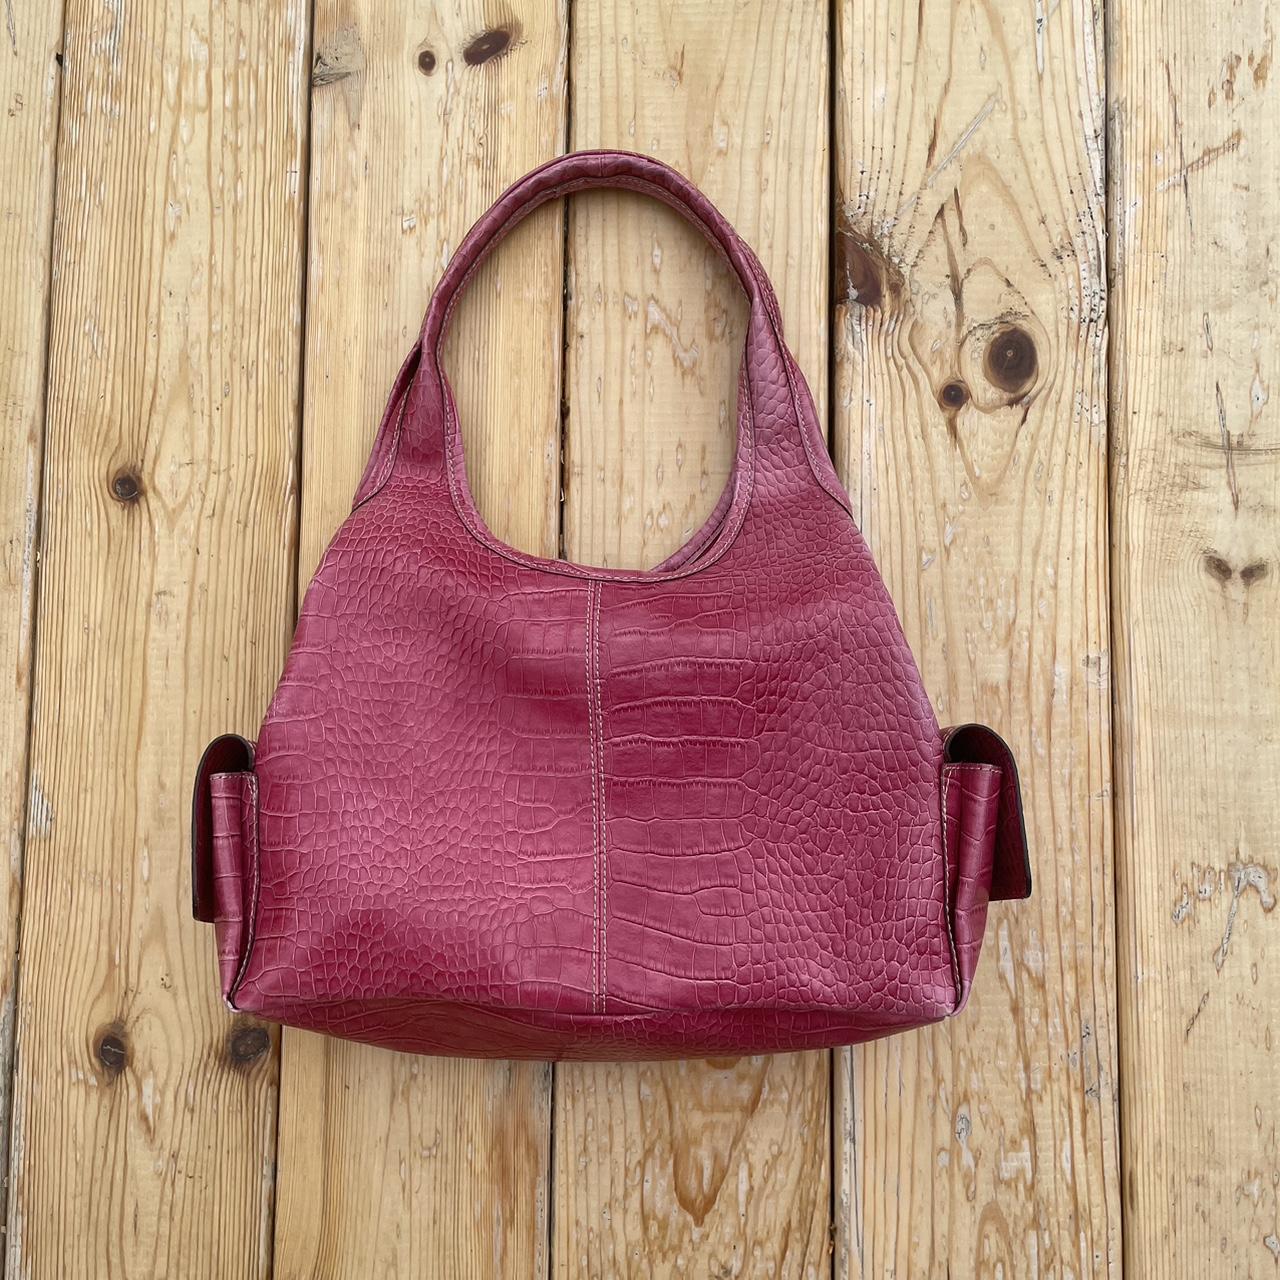 Adorable vintage pink vegan snake print bag 🔅... - Depop